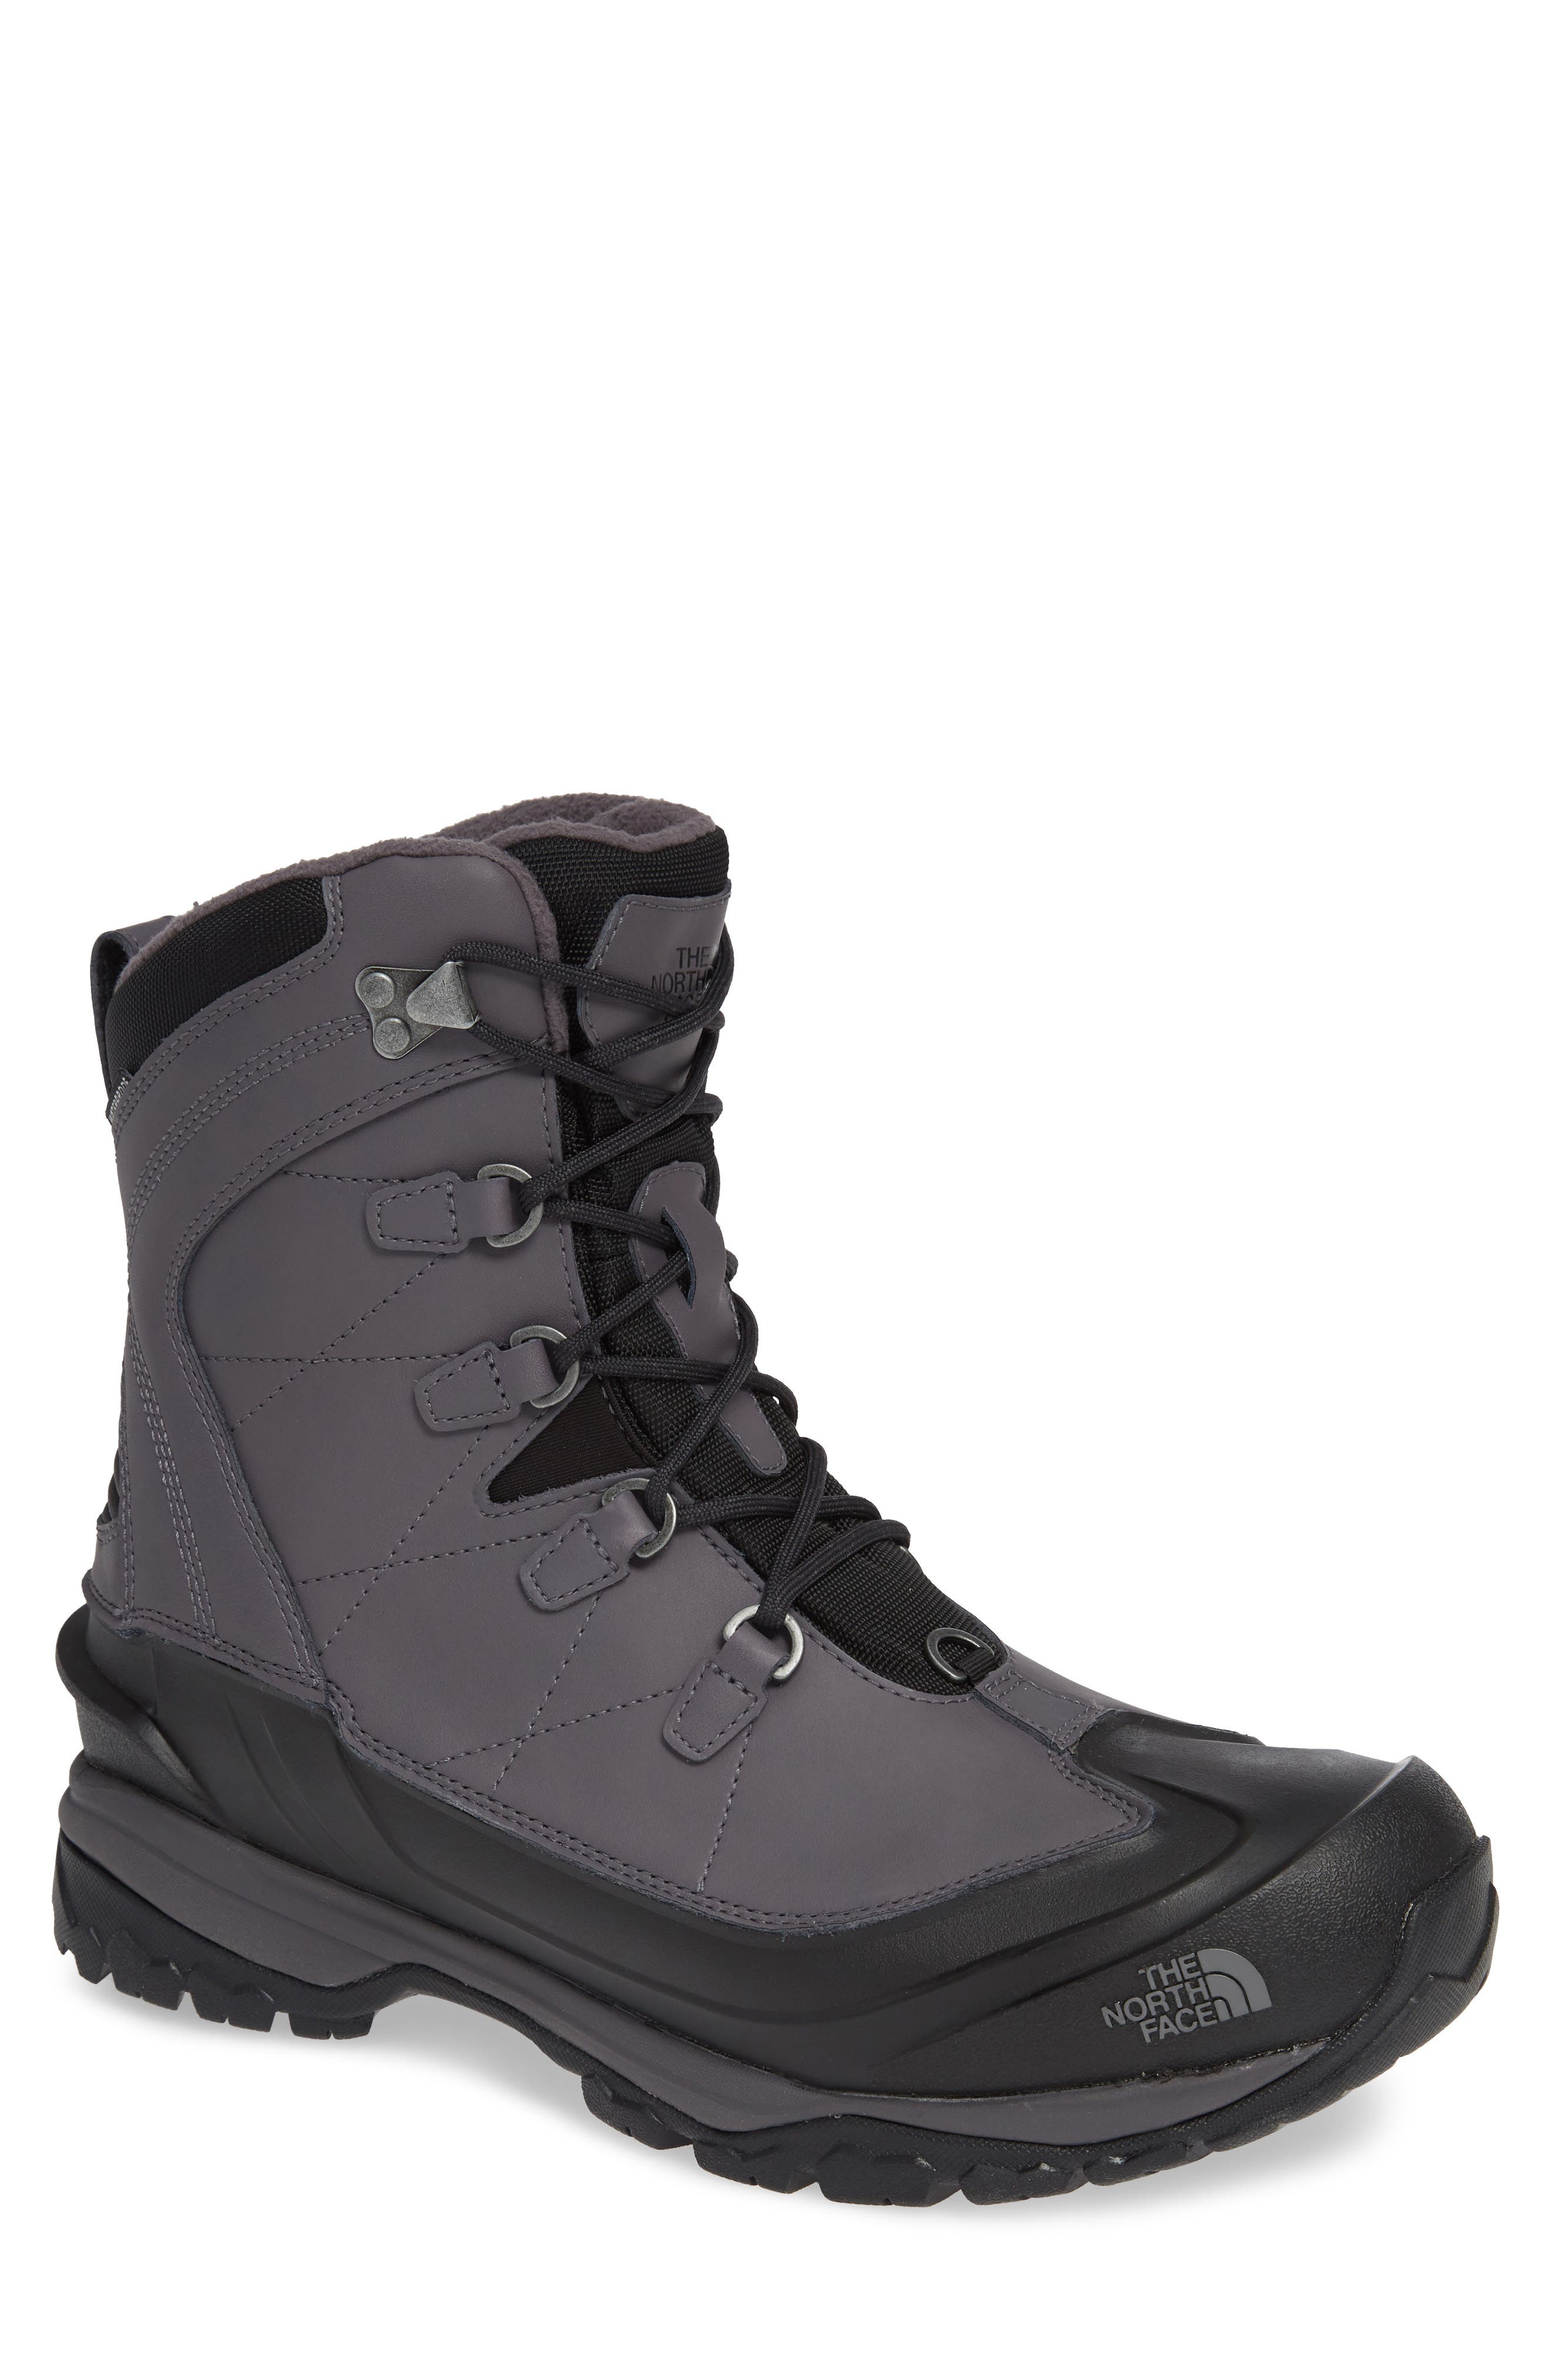 chilkat evo boots